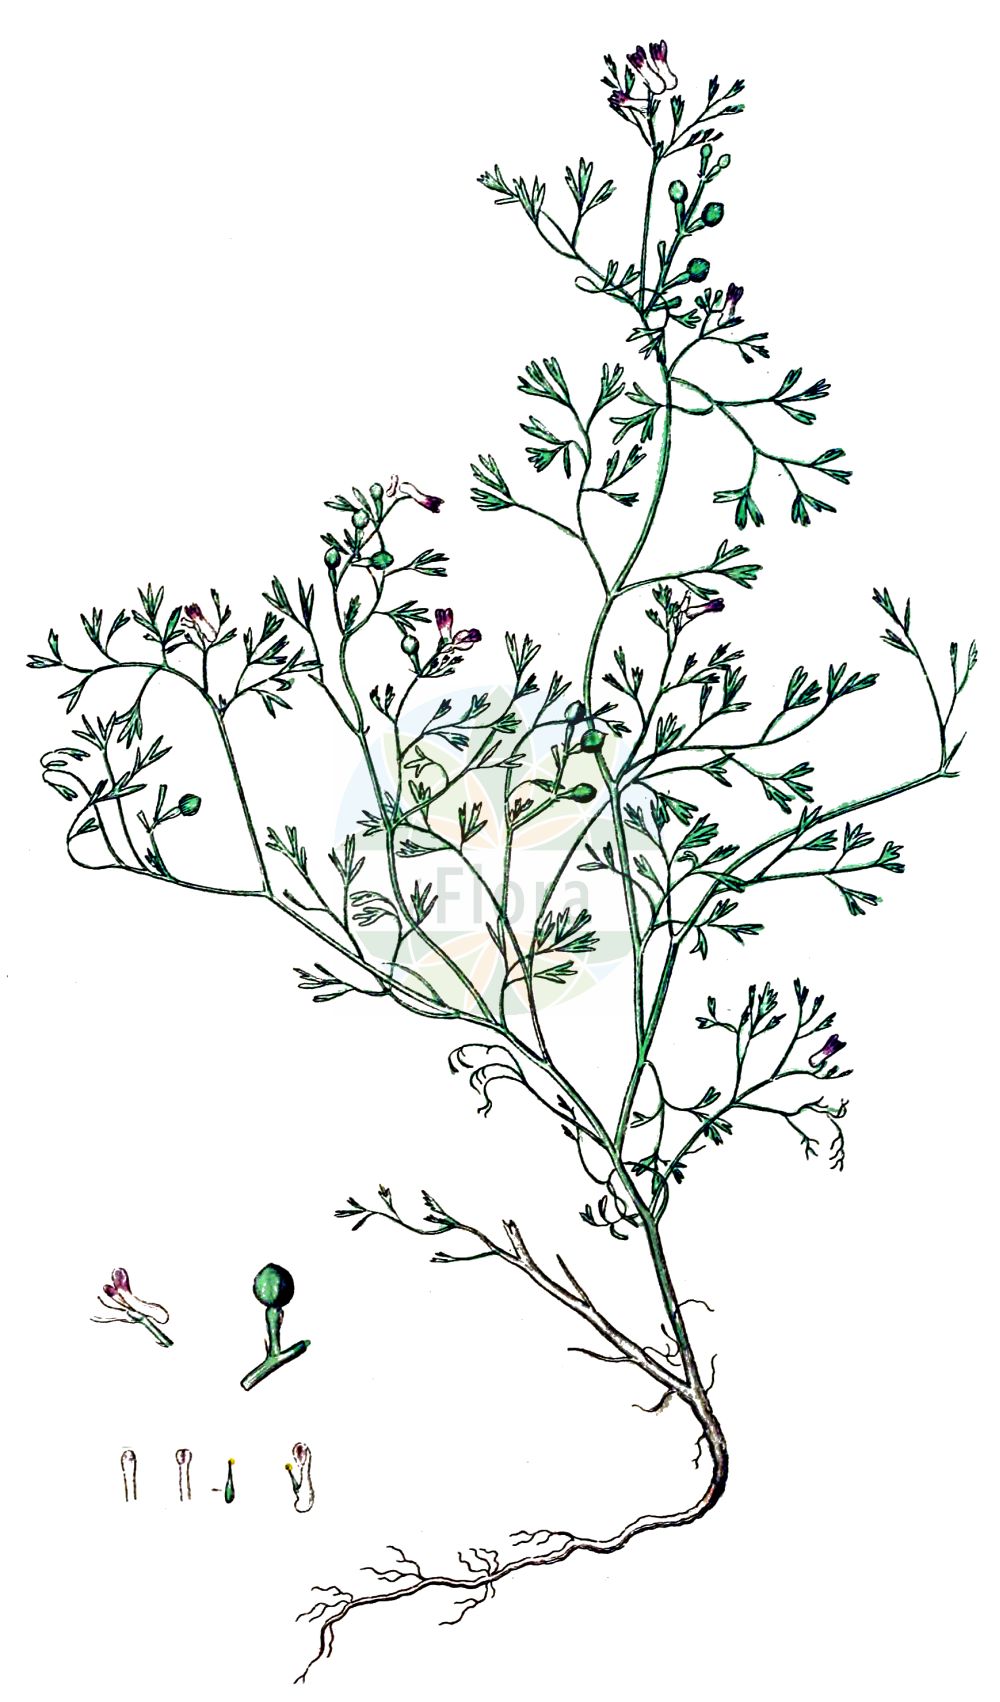 Historische Abbildung von Fumaria parviflora (Kleinblütiger Erdrauch - Fine-leaved Fumitory). Das Bild zeigt Blatt, Bluete, Frucht und Same. ---- Historical Drawing of Fumaria parviflora (Kleinblütiger Erdrauch - Fine-leaved Fumitory). The image is showing leaf, flower, fruit and seed.(Fumaria parviflora,Kleinblütiger Erdrauch,Fine-leaved Fumitory,Fumaria caespitosa,Fumaria glauca,Fumaria leucantha,Fumaria minima,Fumaria parviflora,Fumaria parviflora subsp. microsepala,Kleinbluetiger Erdrauch,Fine-leaved Fumitory,Fineleaf Fumitory,Small-flowered Fumitory,Small-flower Fumitory,Fumaria,Erdrauch,Fumitory,Papaveraceae,Mohngewächse,Poppy family,Blatt,Bluete,Frucht,Same,leaf,flower,fruit,seed,Svensk Botanik (Svensk Botanik))